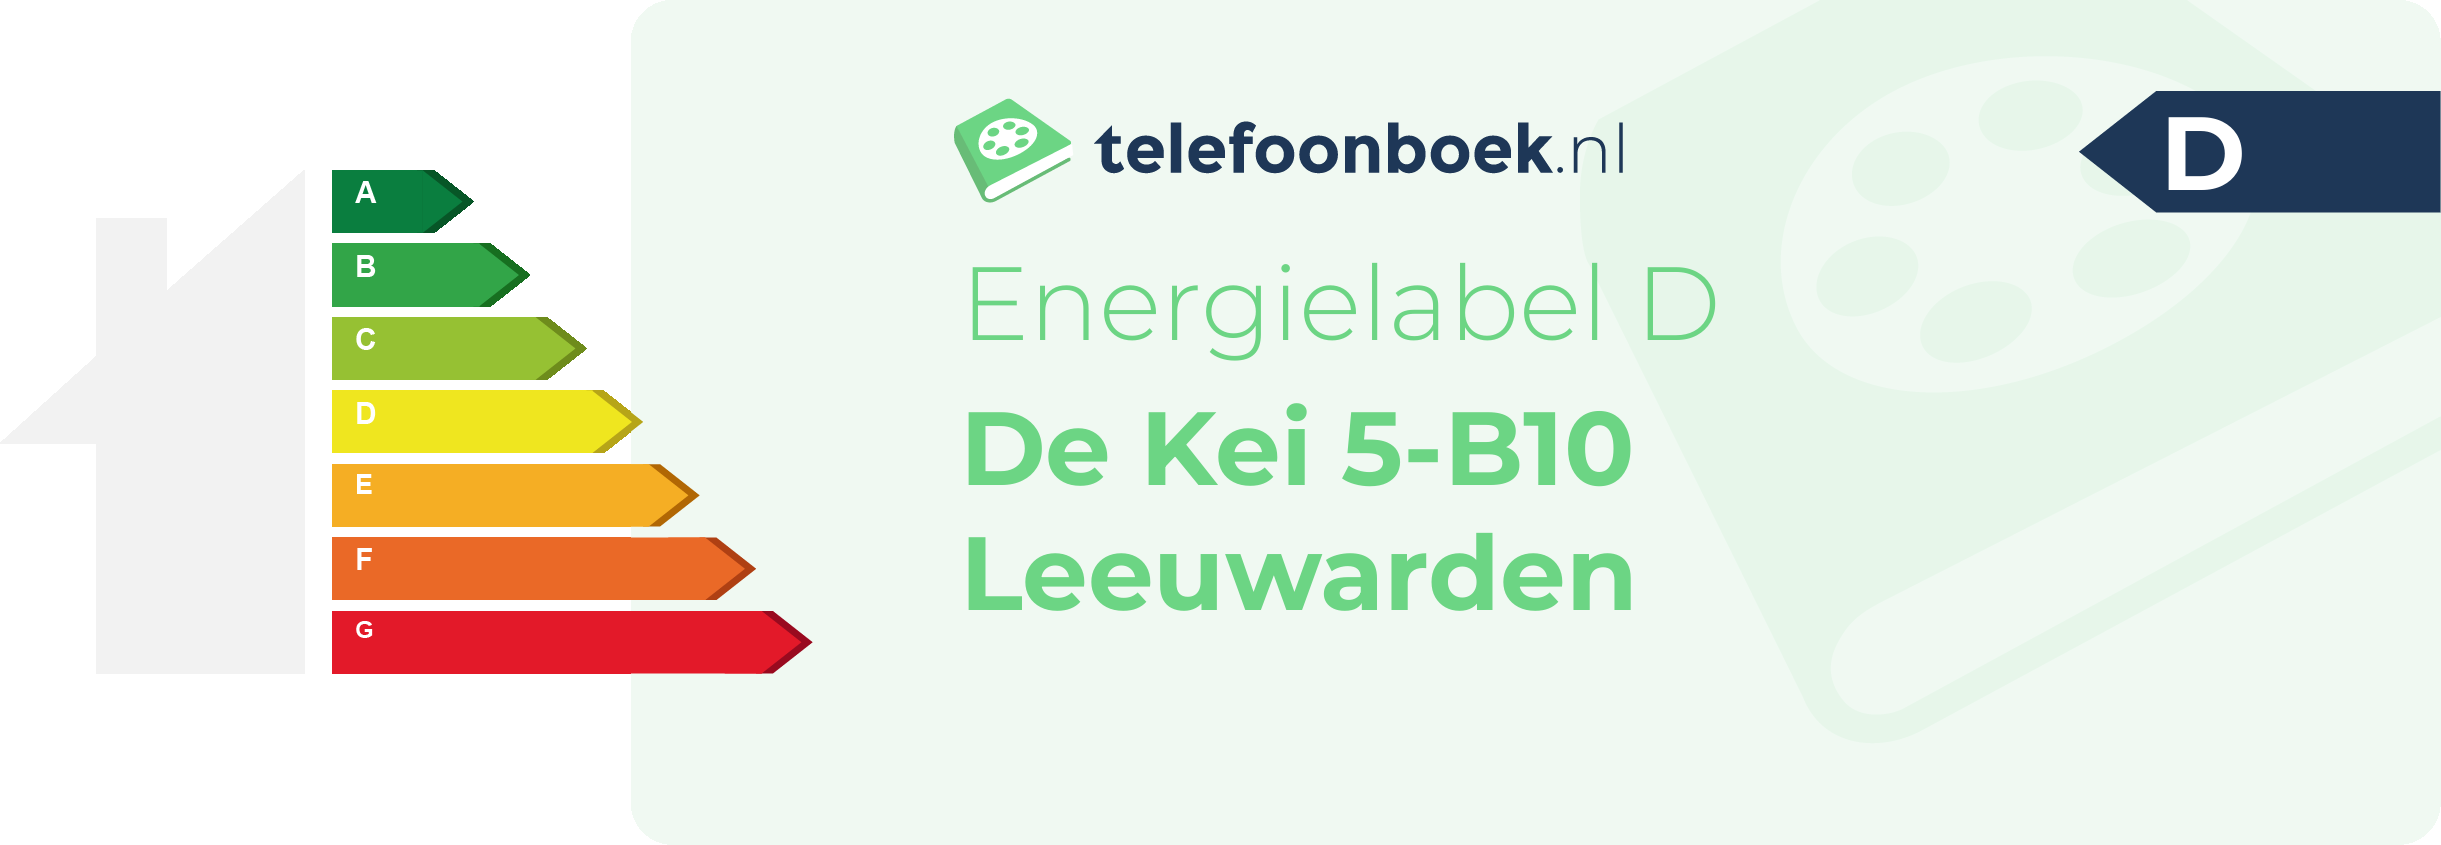 Energielabel De Kei 5-B10 Leeuwarden